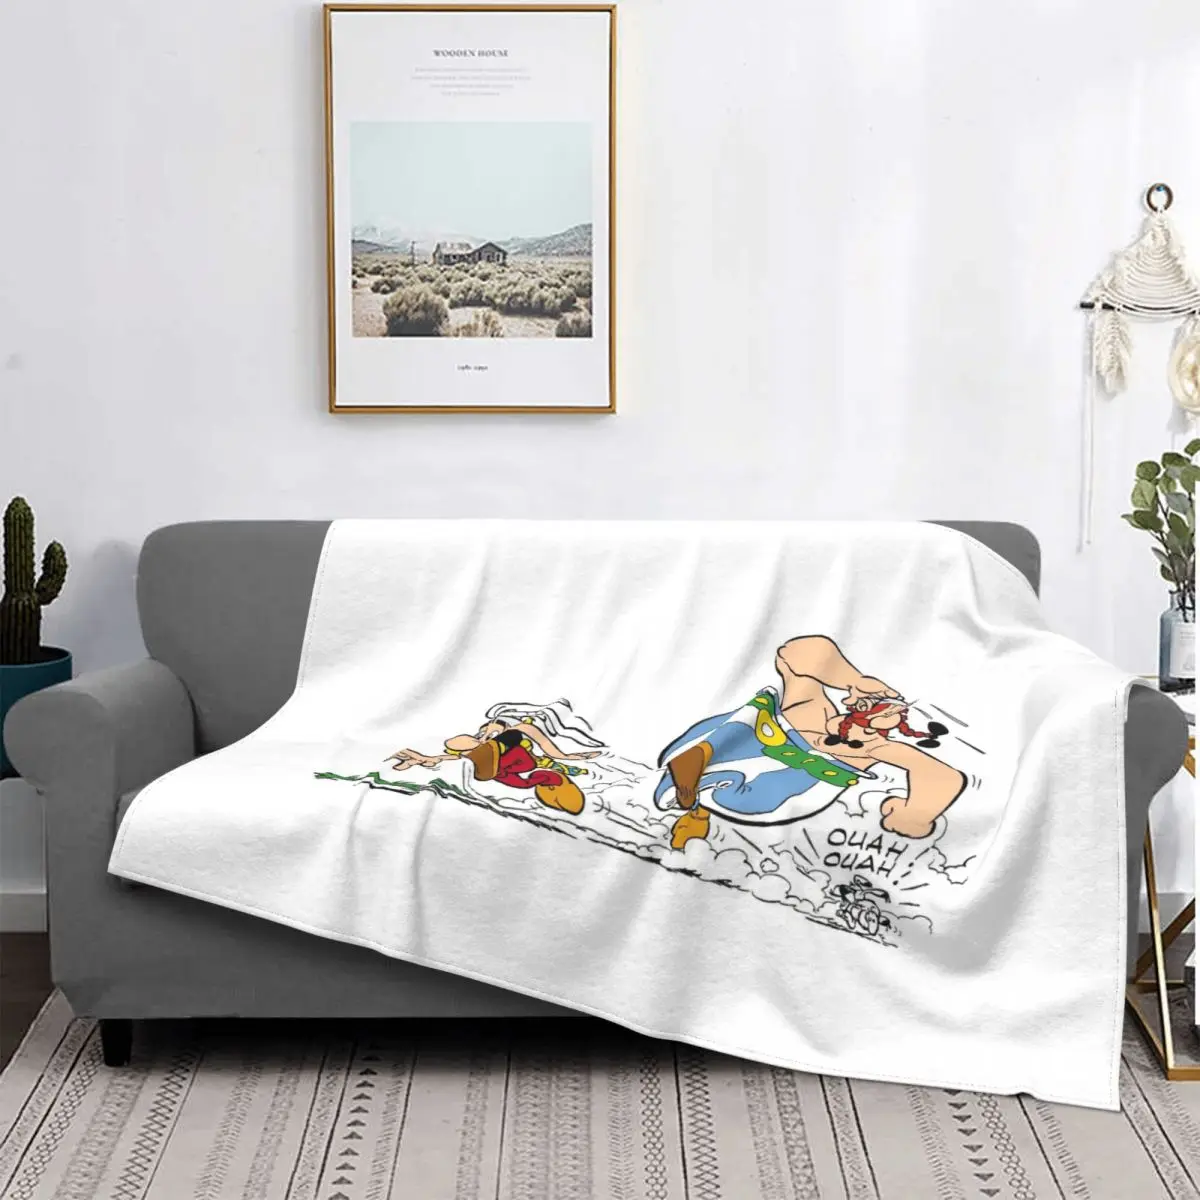 

Ковер Asterix Obelix, текстильный флокирующий текстиль для гостиной, популярное одеяло для кровати, покрывала, Роскошное Одеяло, фланелевое одеял...